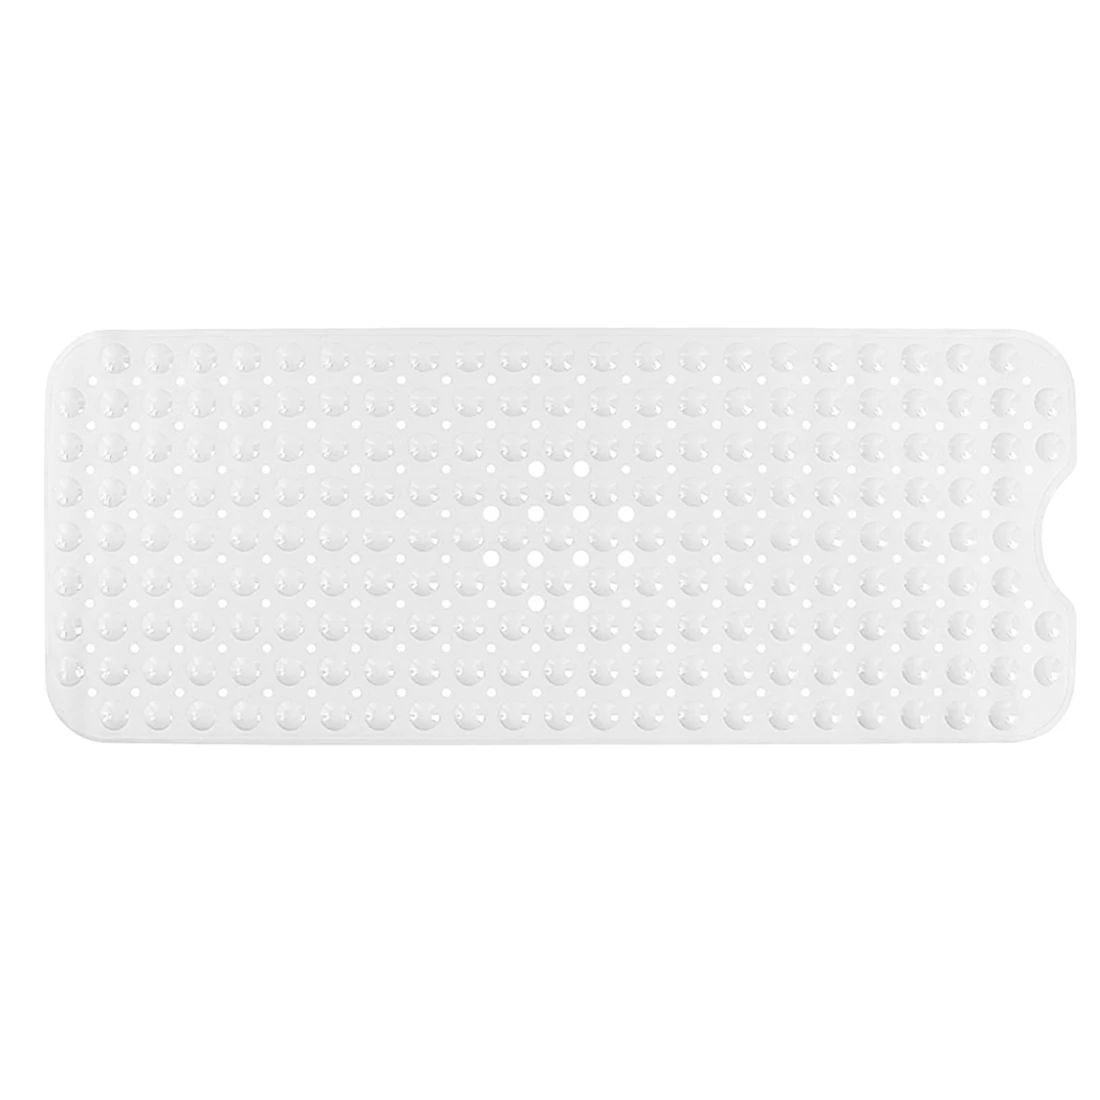 Прозрачный ковер Товары для ванной коврик для ванной присоска коврики для ванной ПВХ нескользящий коврик для ванной - Цвет: Белый